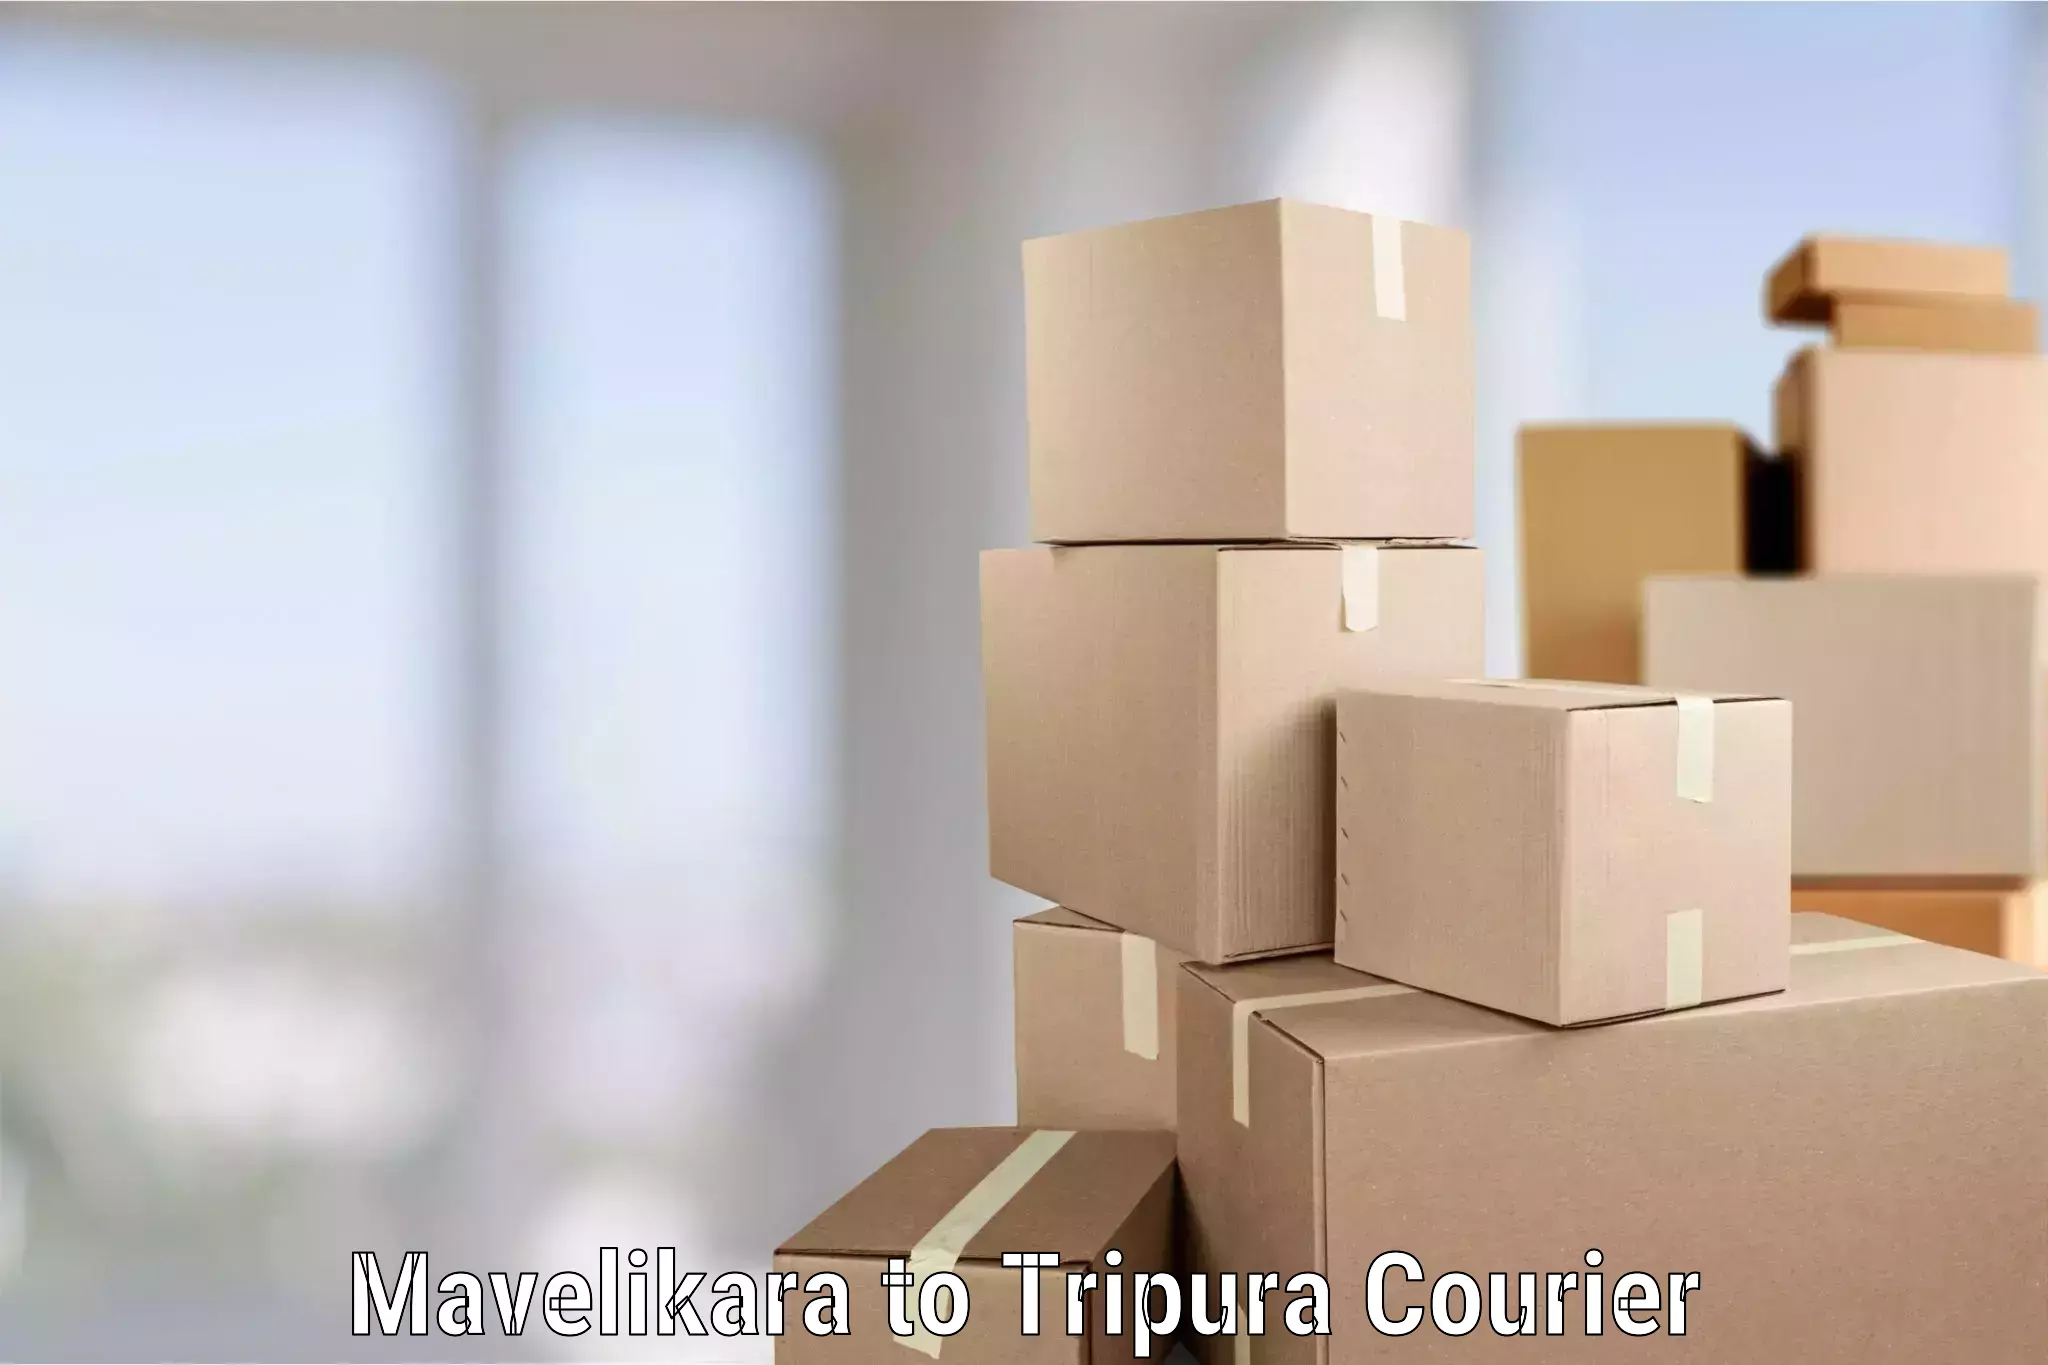 Furniture transport and storage Mavelikara to Manughat